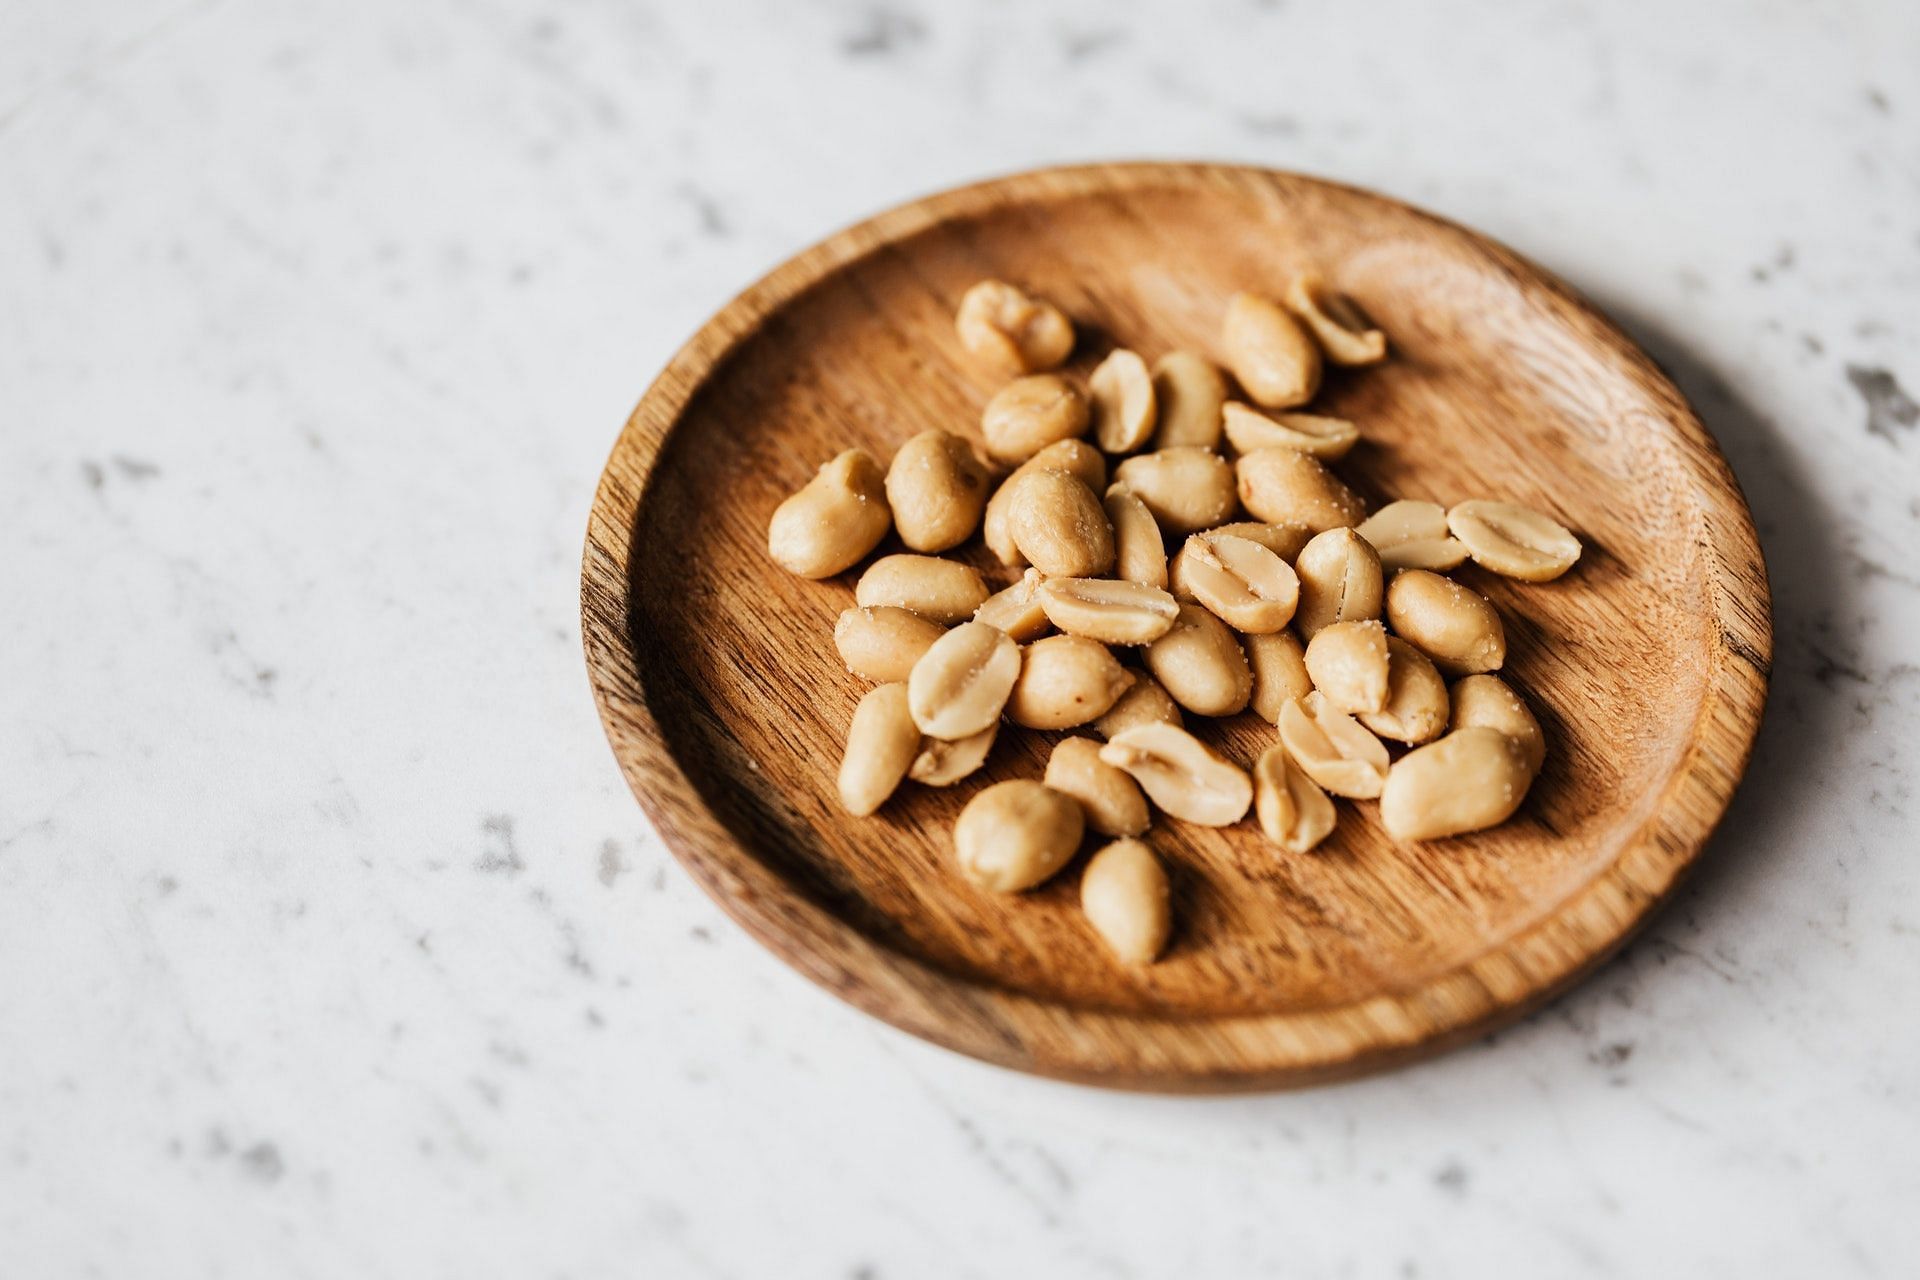 Peanut nutrition facts. (Photo by Karolina Grabowska via pexels)